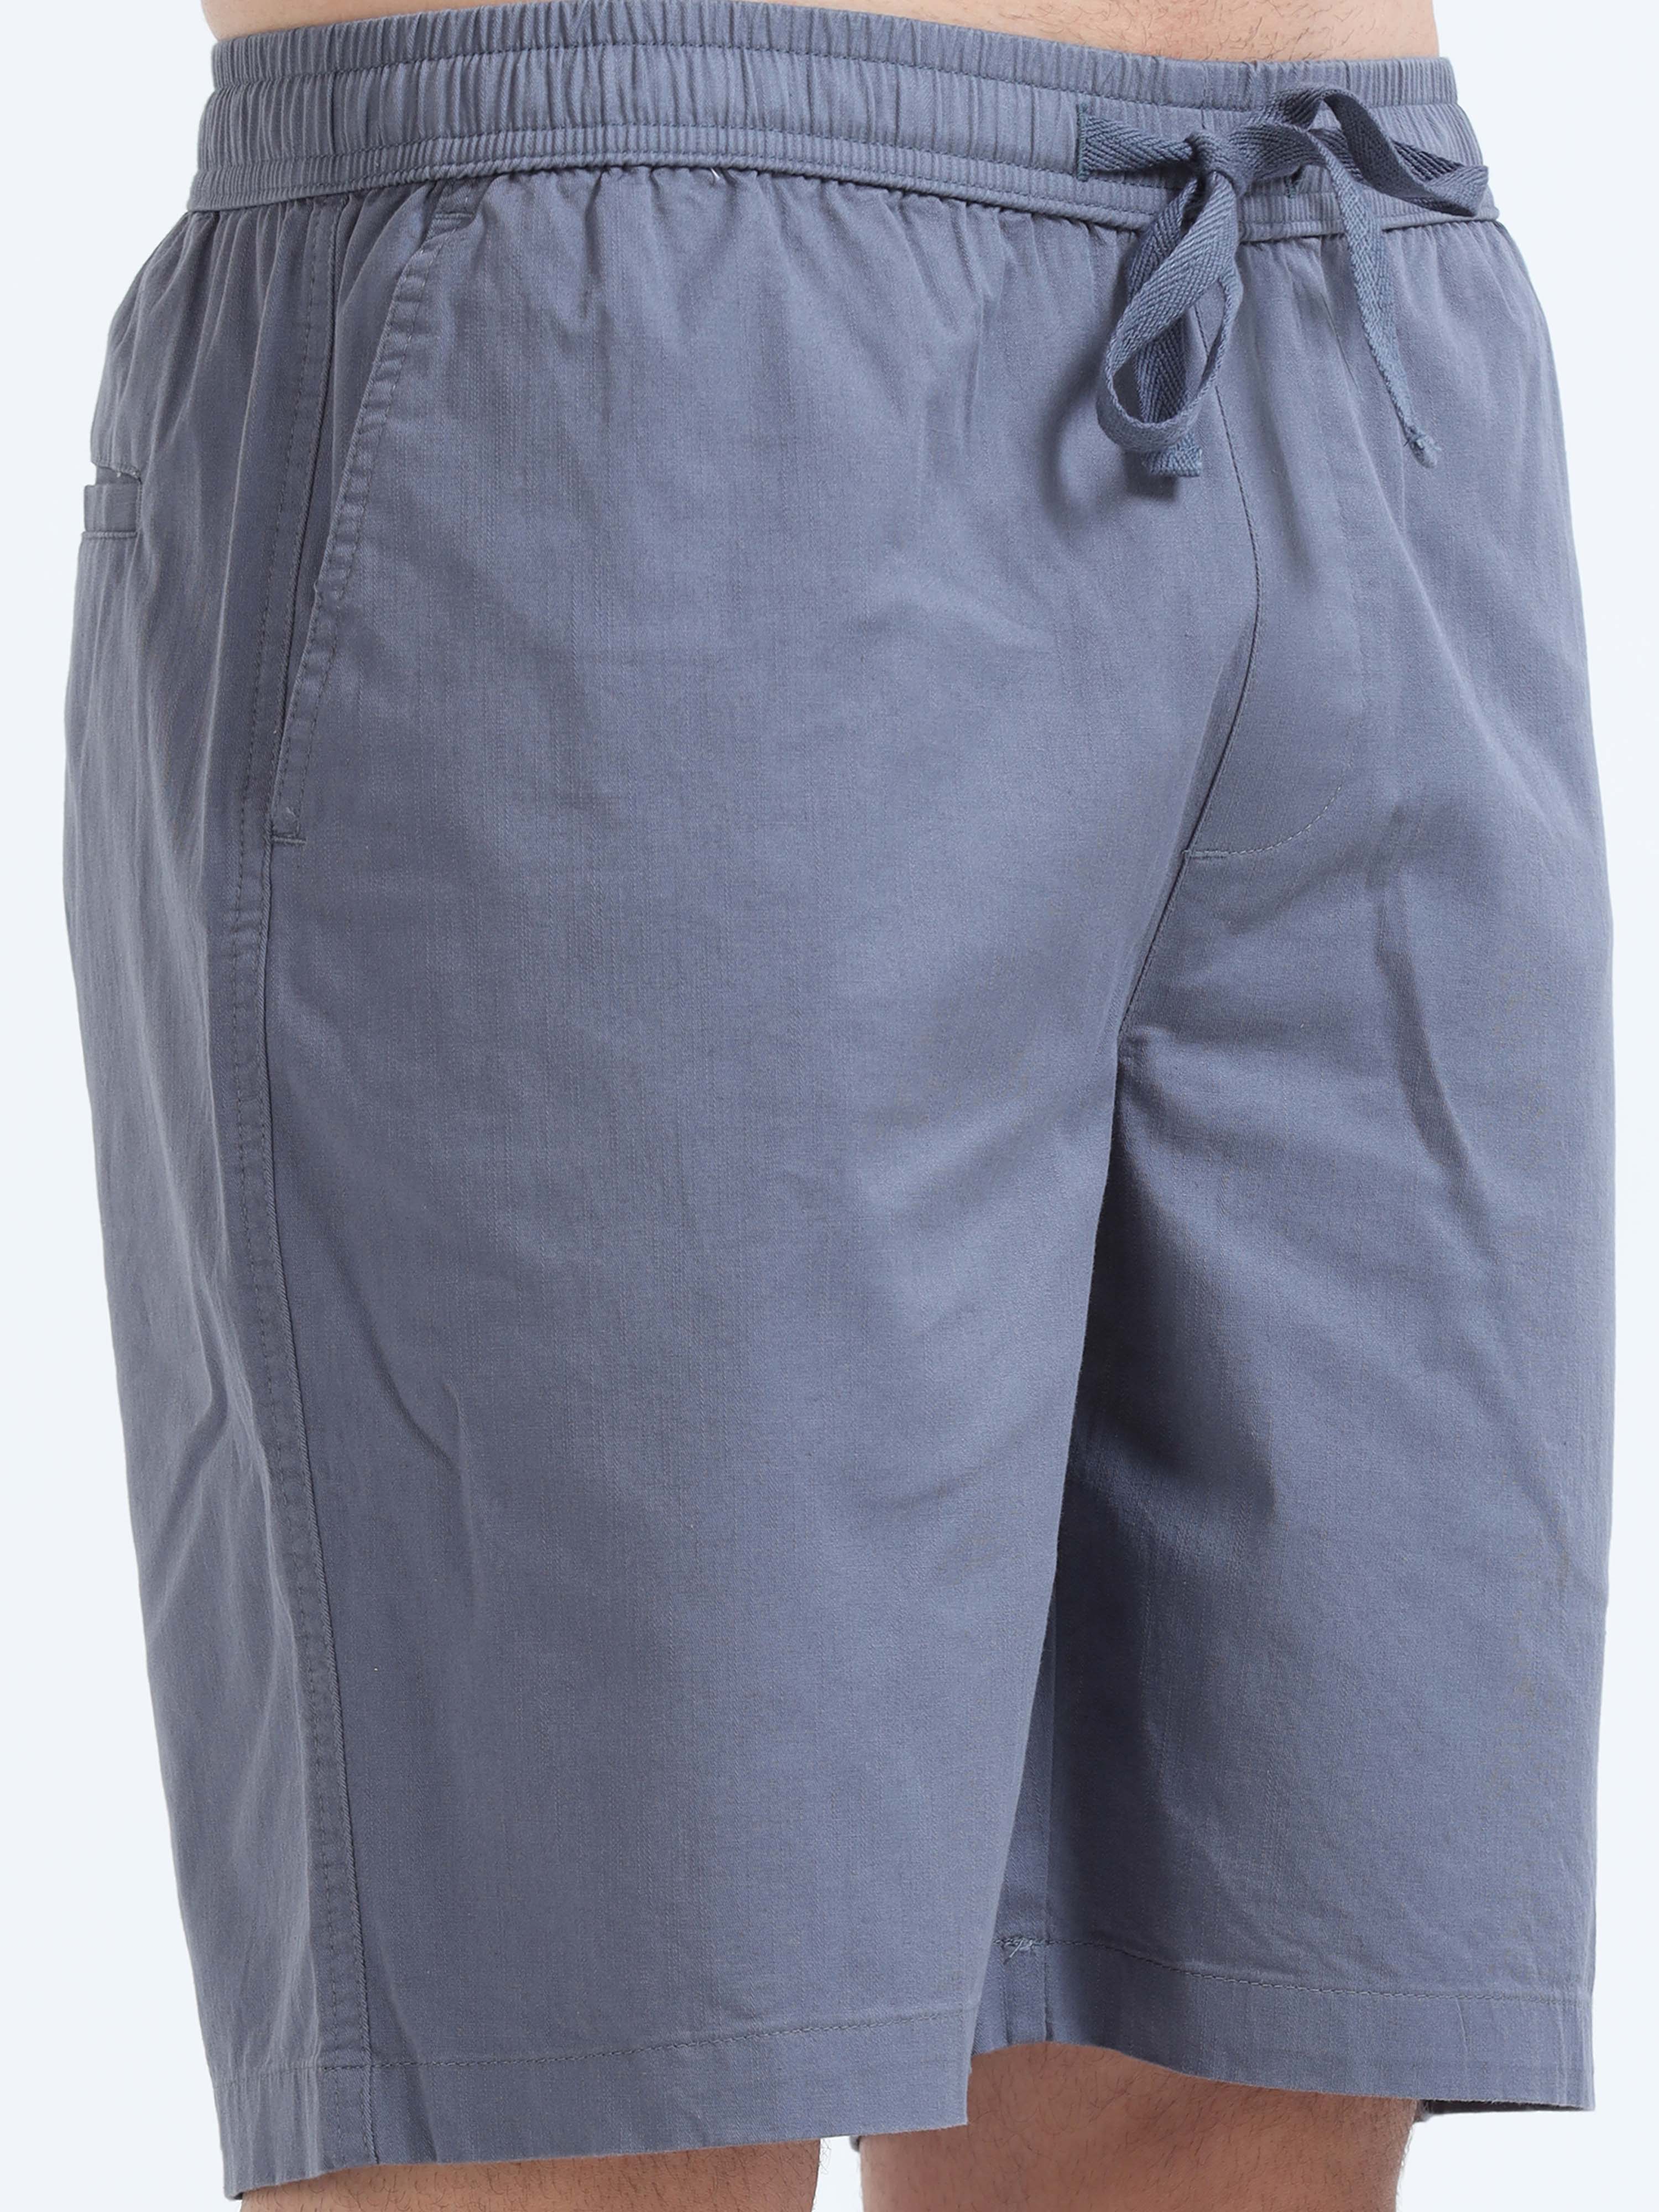 Soft Cotton Stone Blue Basic Shorts